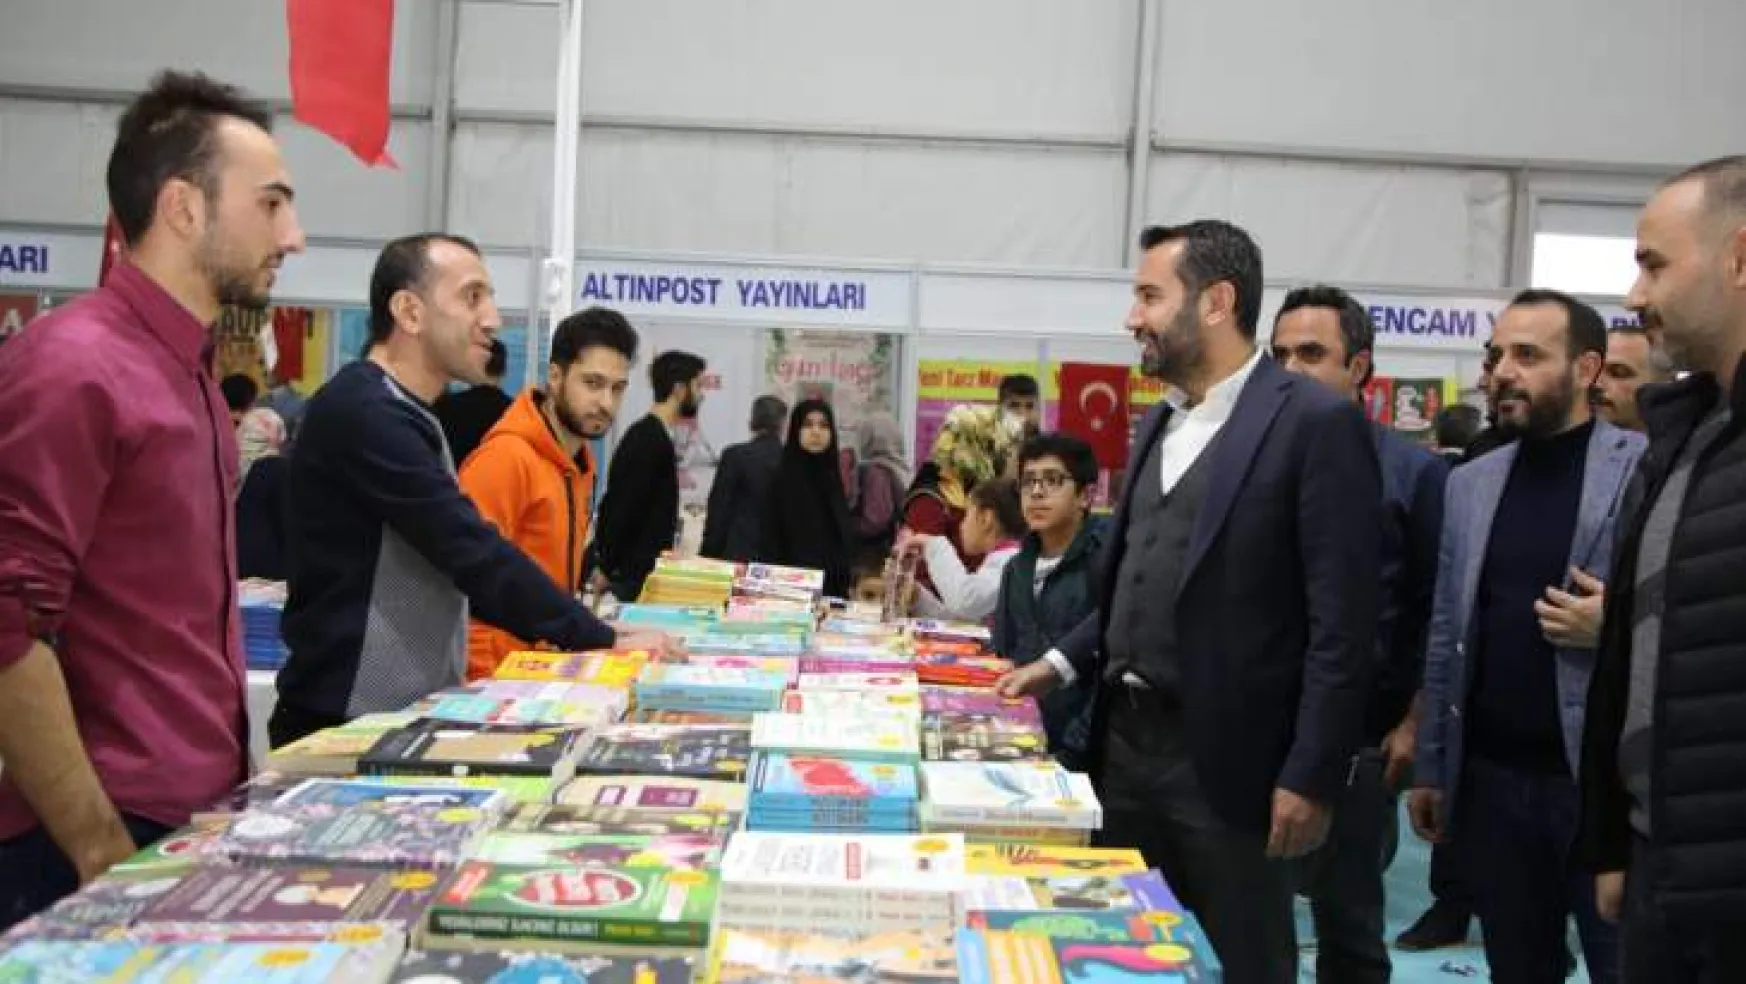 Elazığ Belediyesi 3. Kitap Fuarı'nı 125 Bin Kişi Ziyaret Etti